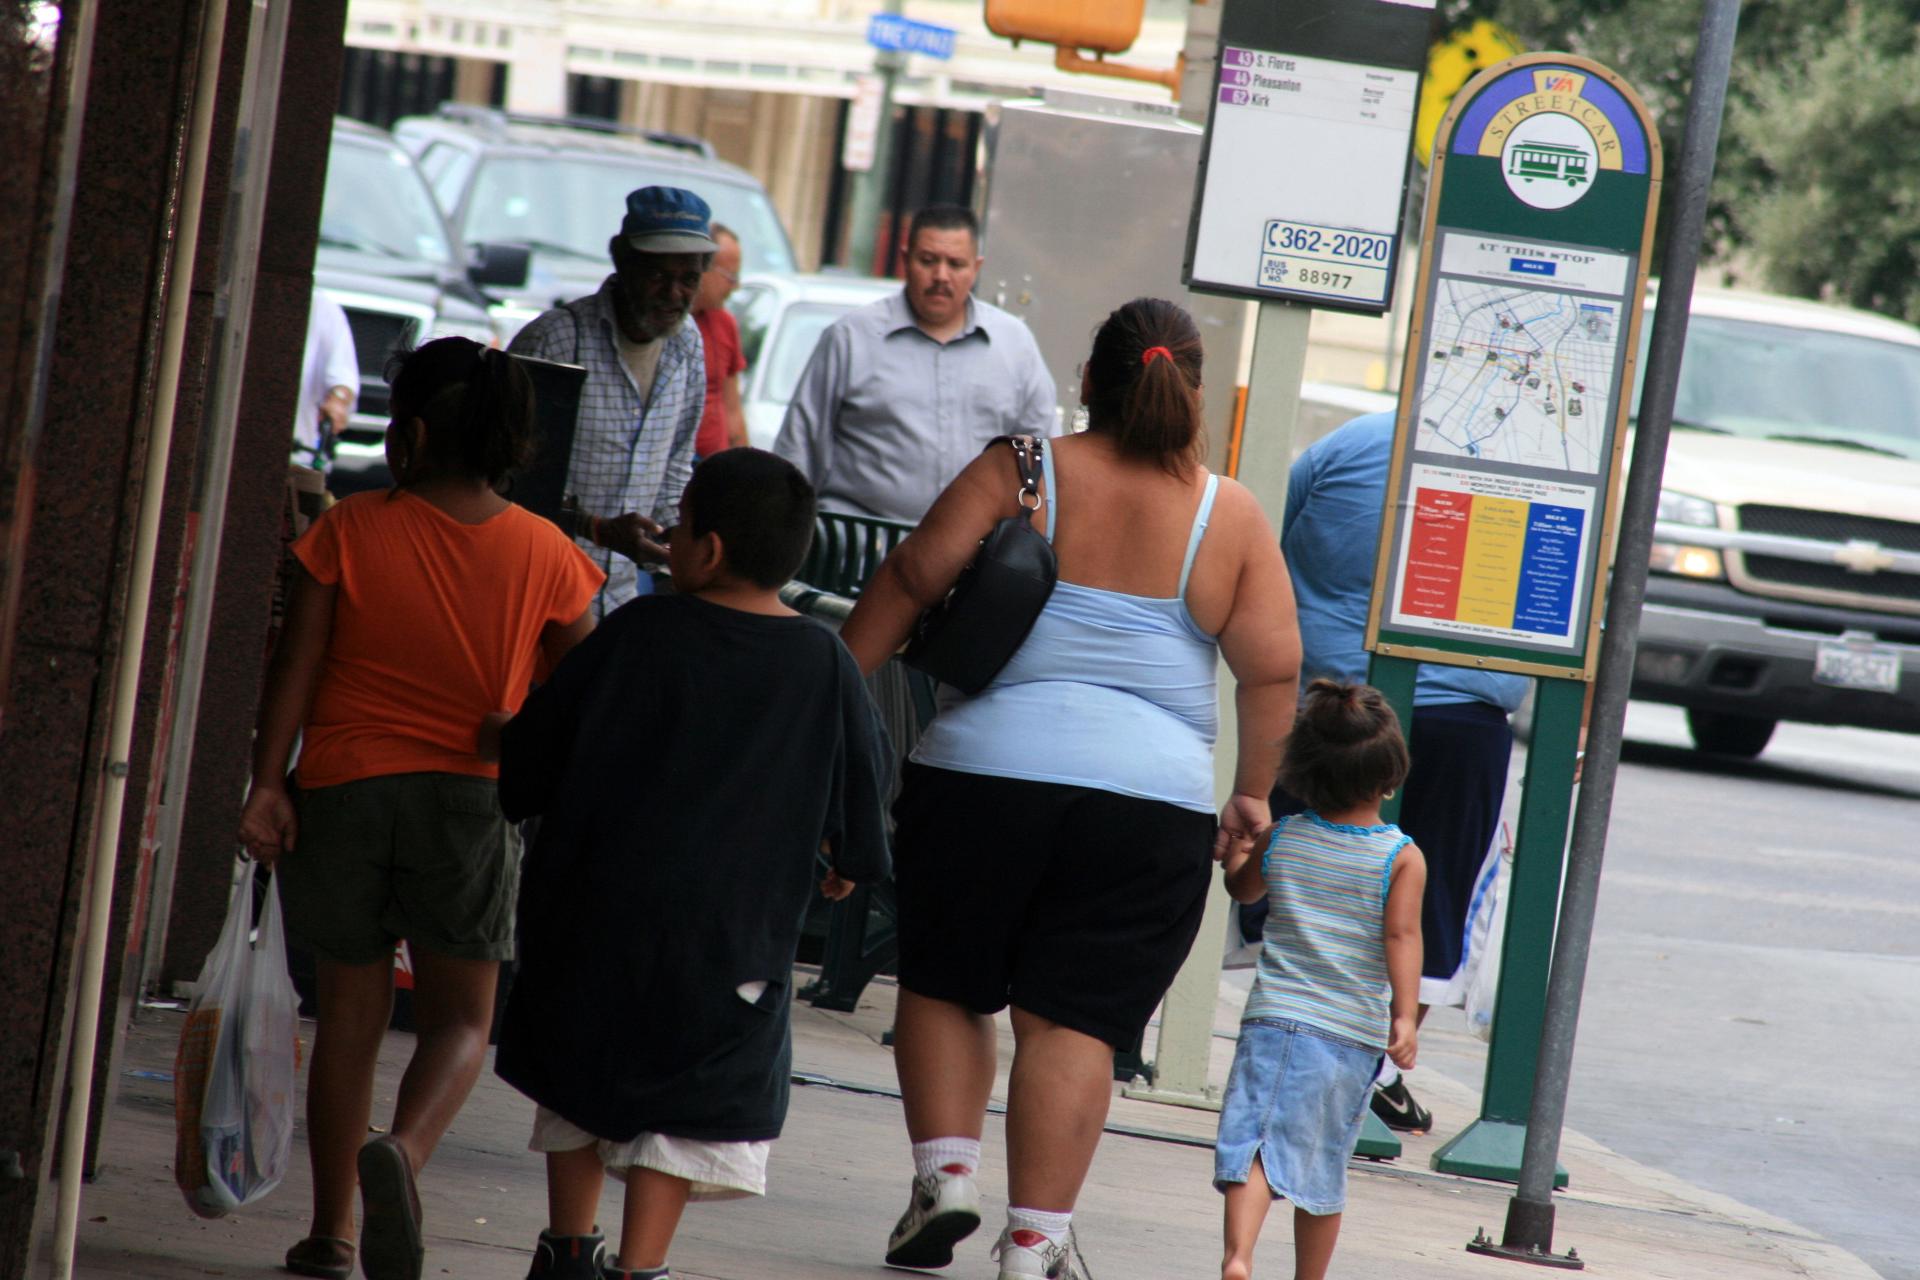 La ciudad de San Antonio ha puesto en marcha una serie de programas para revertir el alto índice de obesidad infantil que existe. Imagen de archivo. EFE/José Luis Castillo Castro
